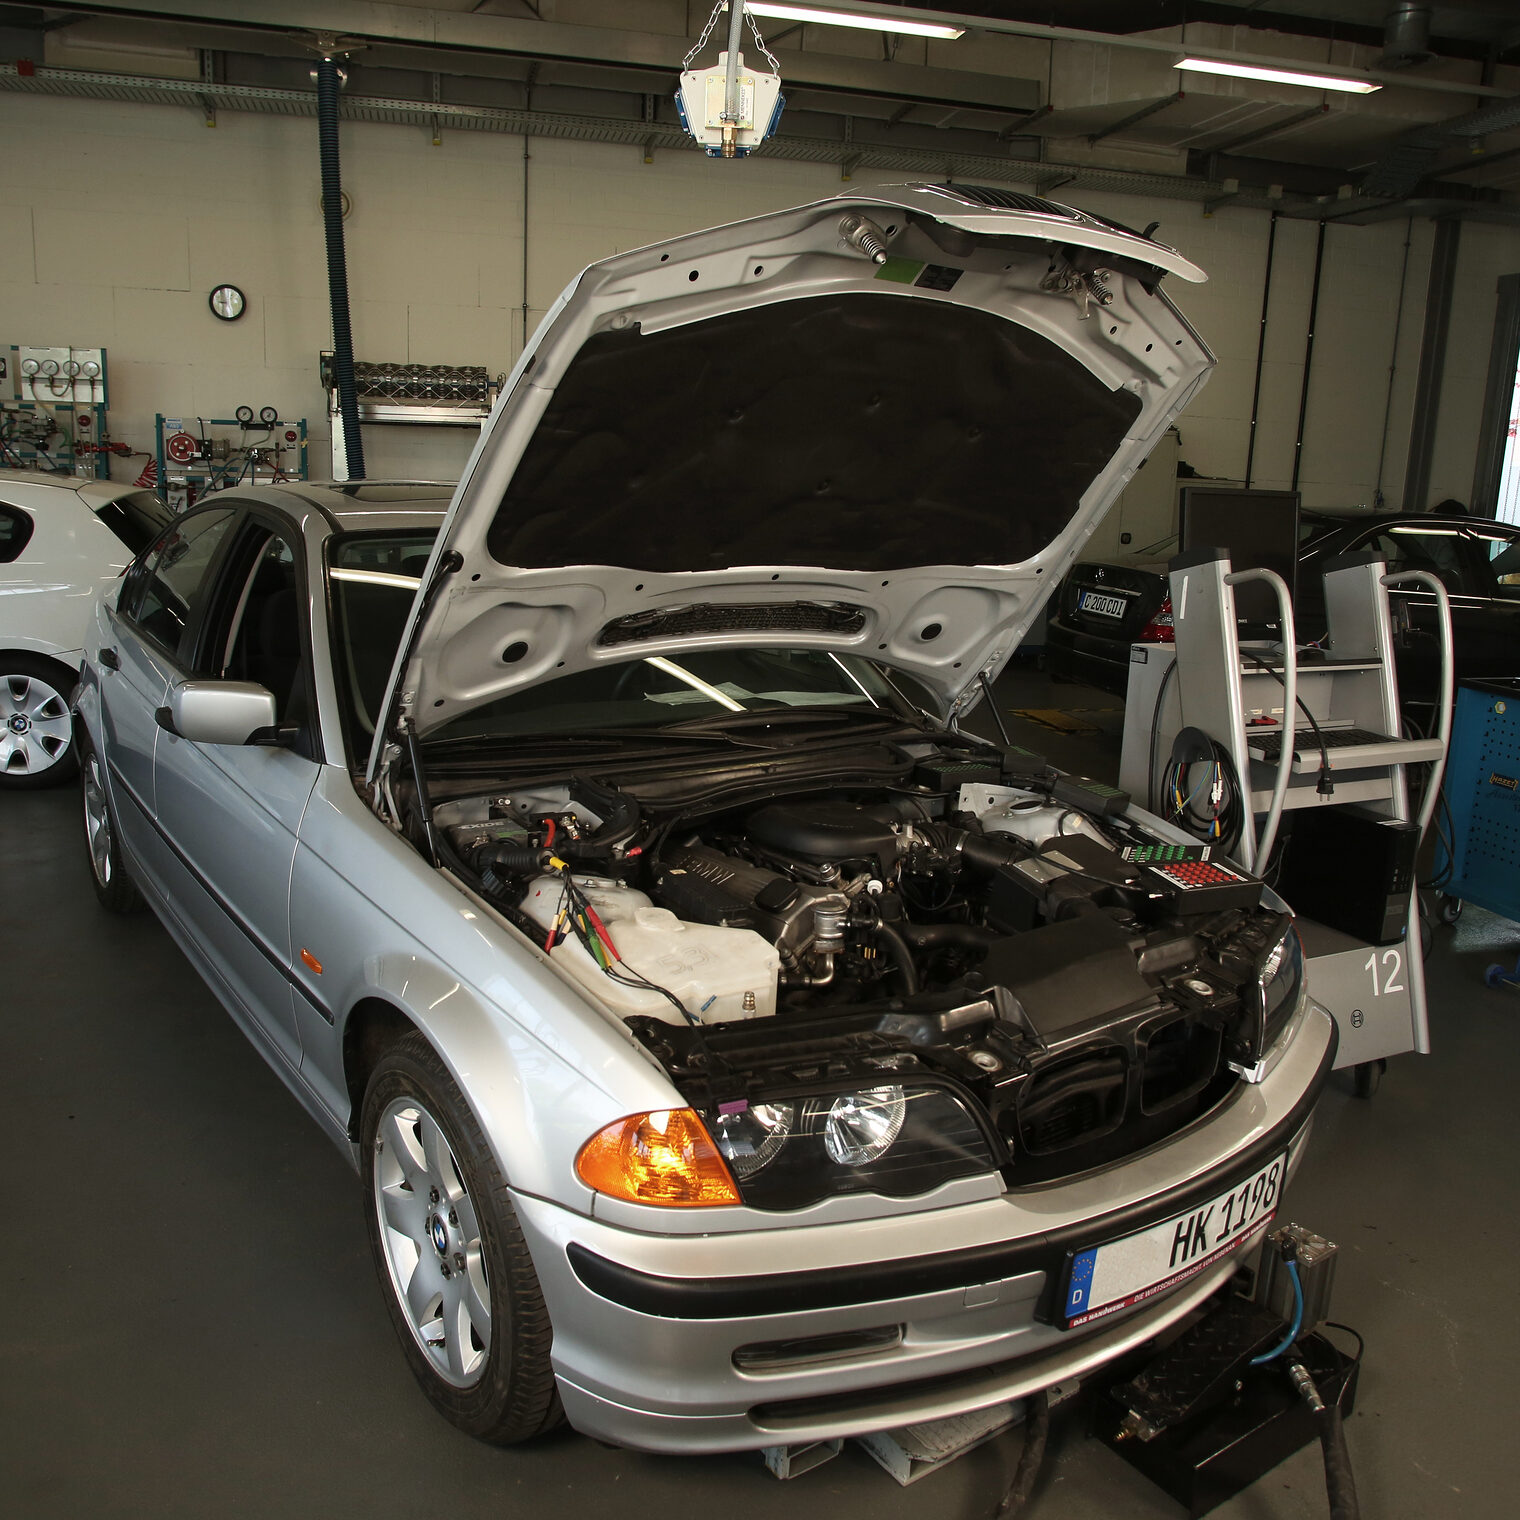 Ein silbernes Auto mit offener Motorhaube steht in einer Werkstatt. Ein Analysegerät steht rechts neben dem Auto. Weiter Autos sind im Hintergrund zu sehen. 